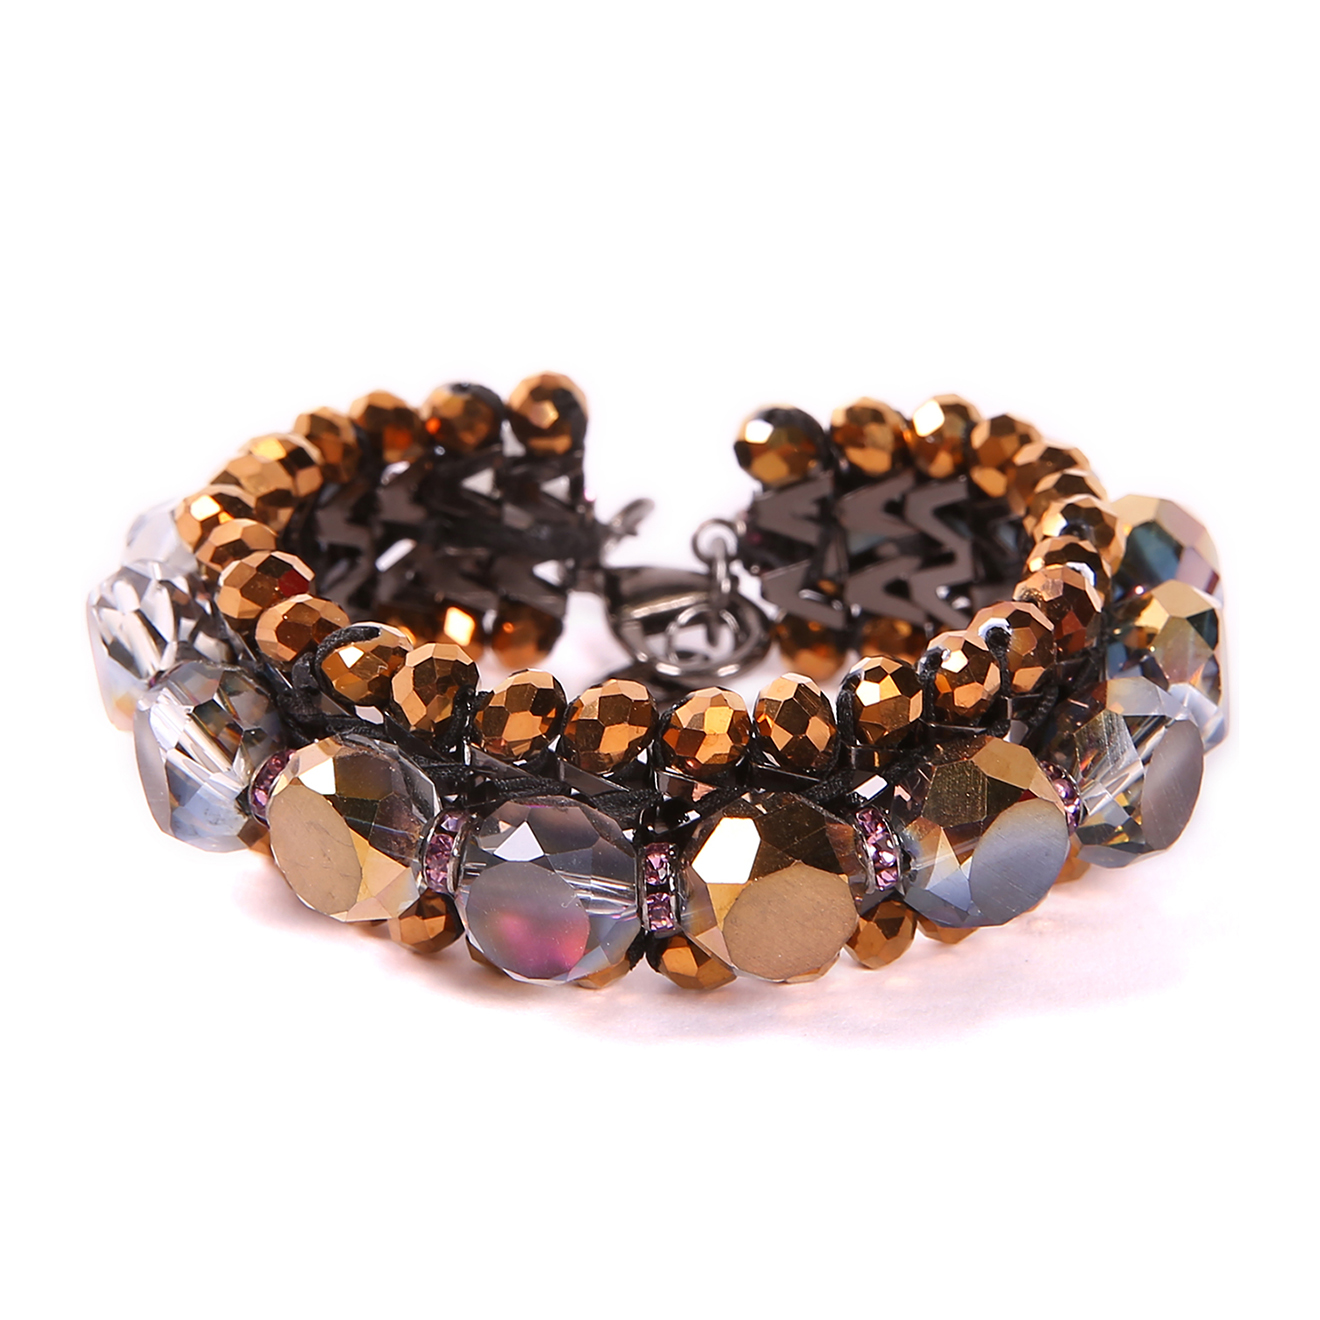 isabel garcia - bracelet garance violet/bronze